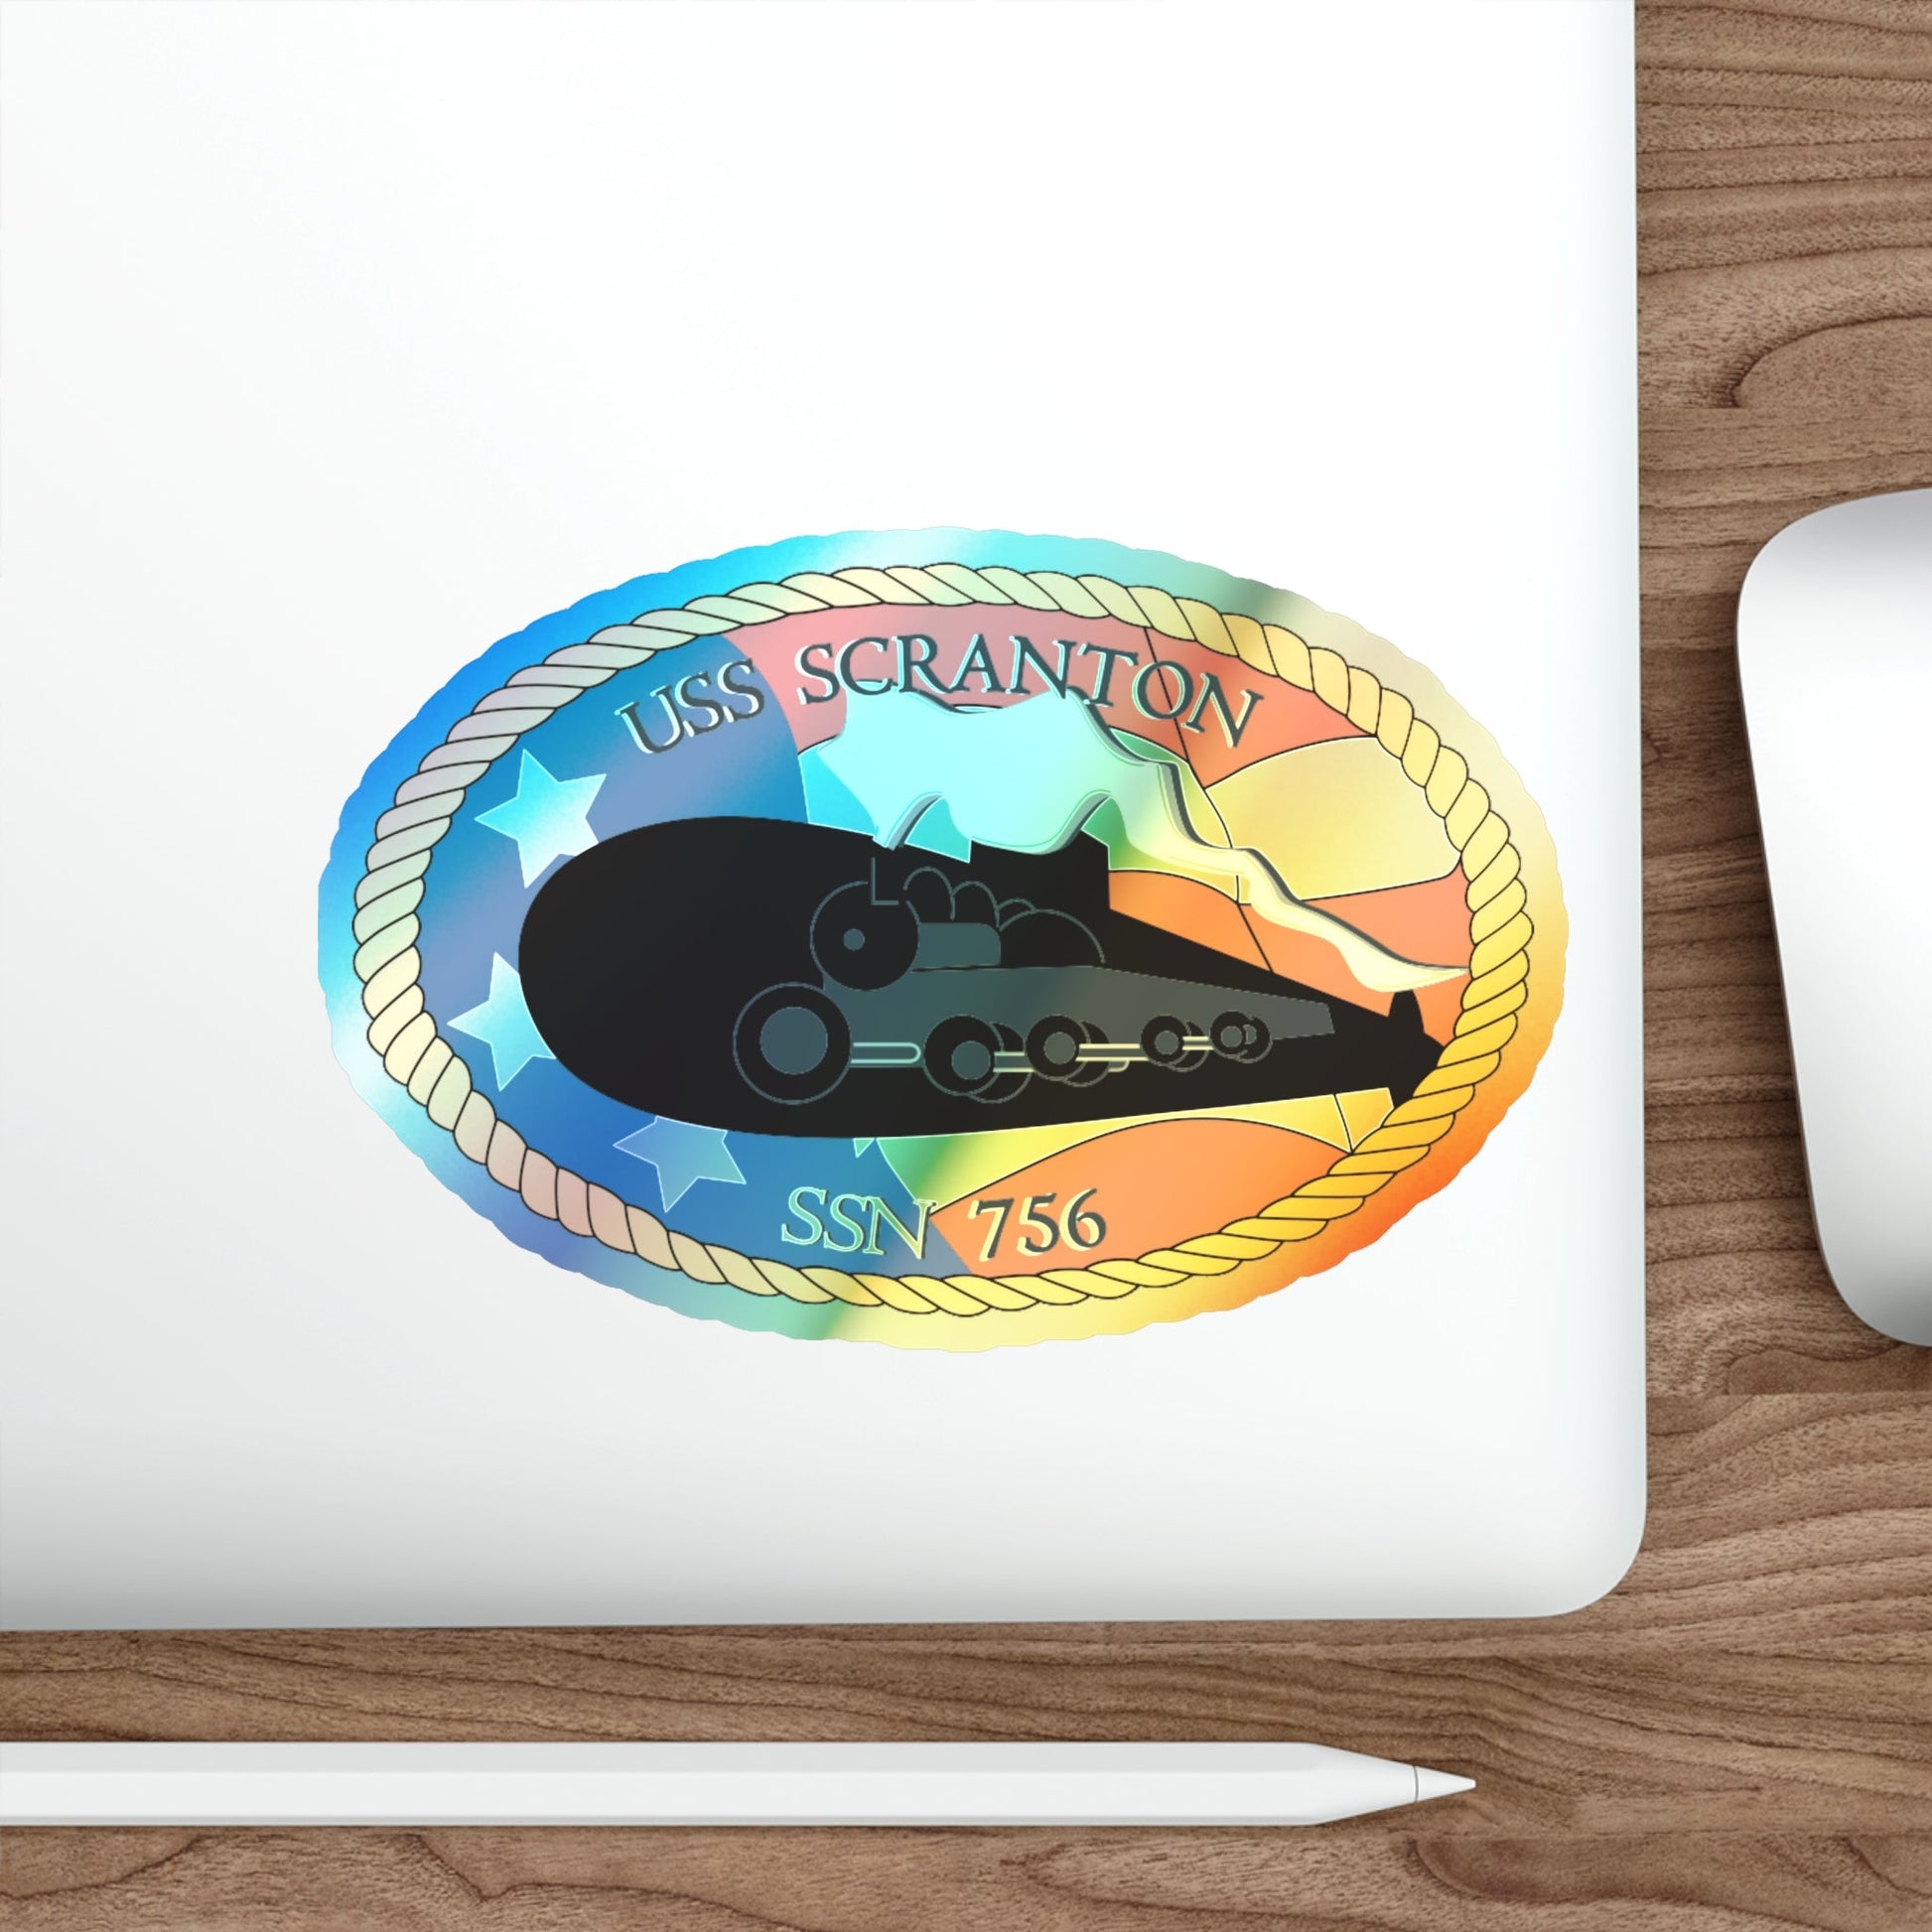 USS Scranton SSN 756 (U.S. Navy) Holographic STICKER Die-Cut Vinyl Decal-The Sticker Space